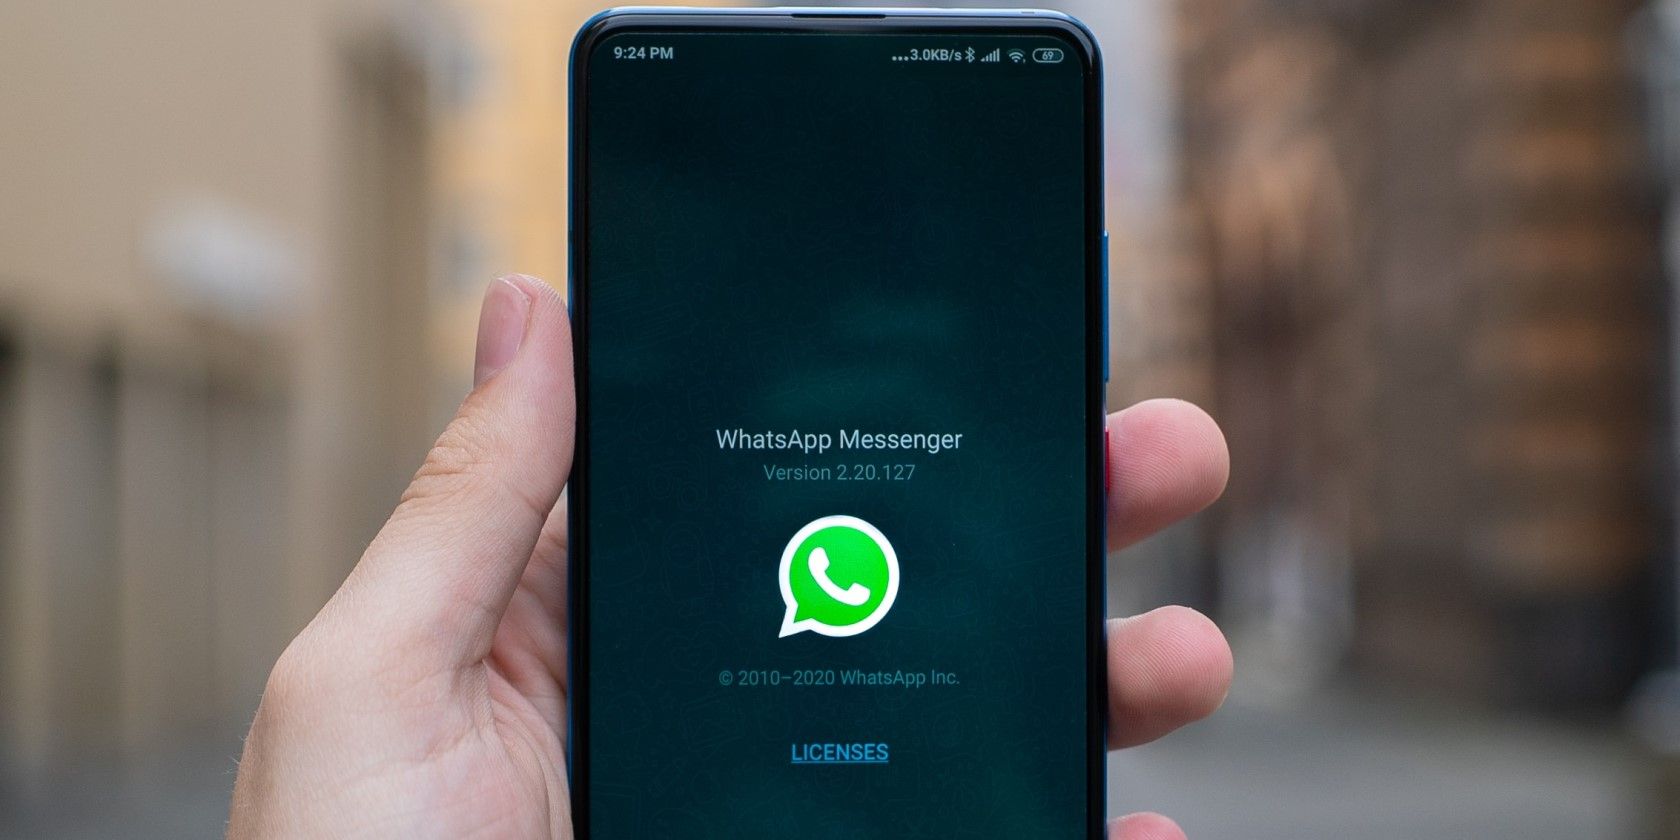 whatsapp new security features - WhatsApp Web potrebbe presto supportare l’autenticazione tramite impronta digitale